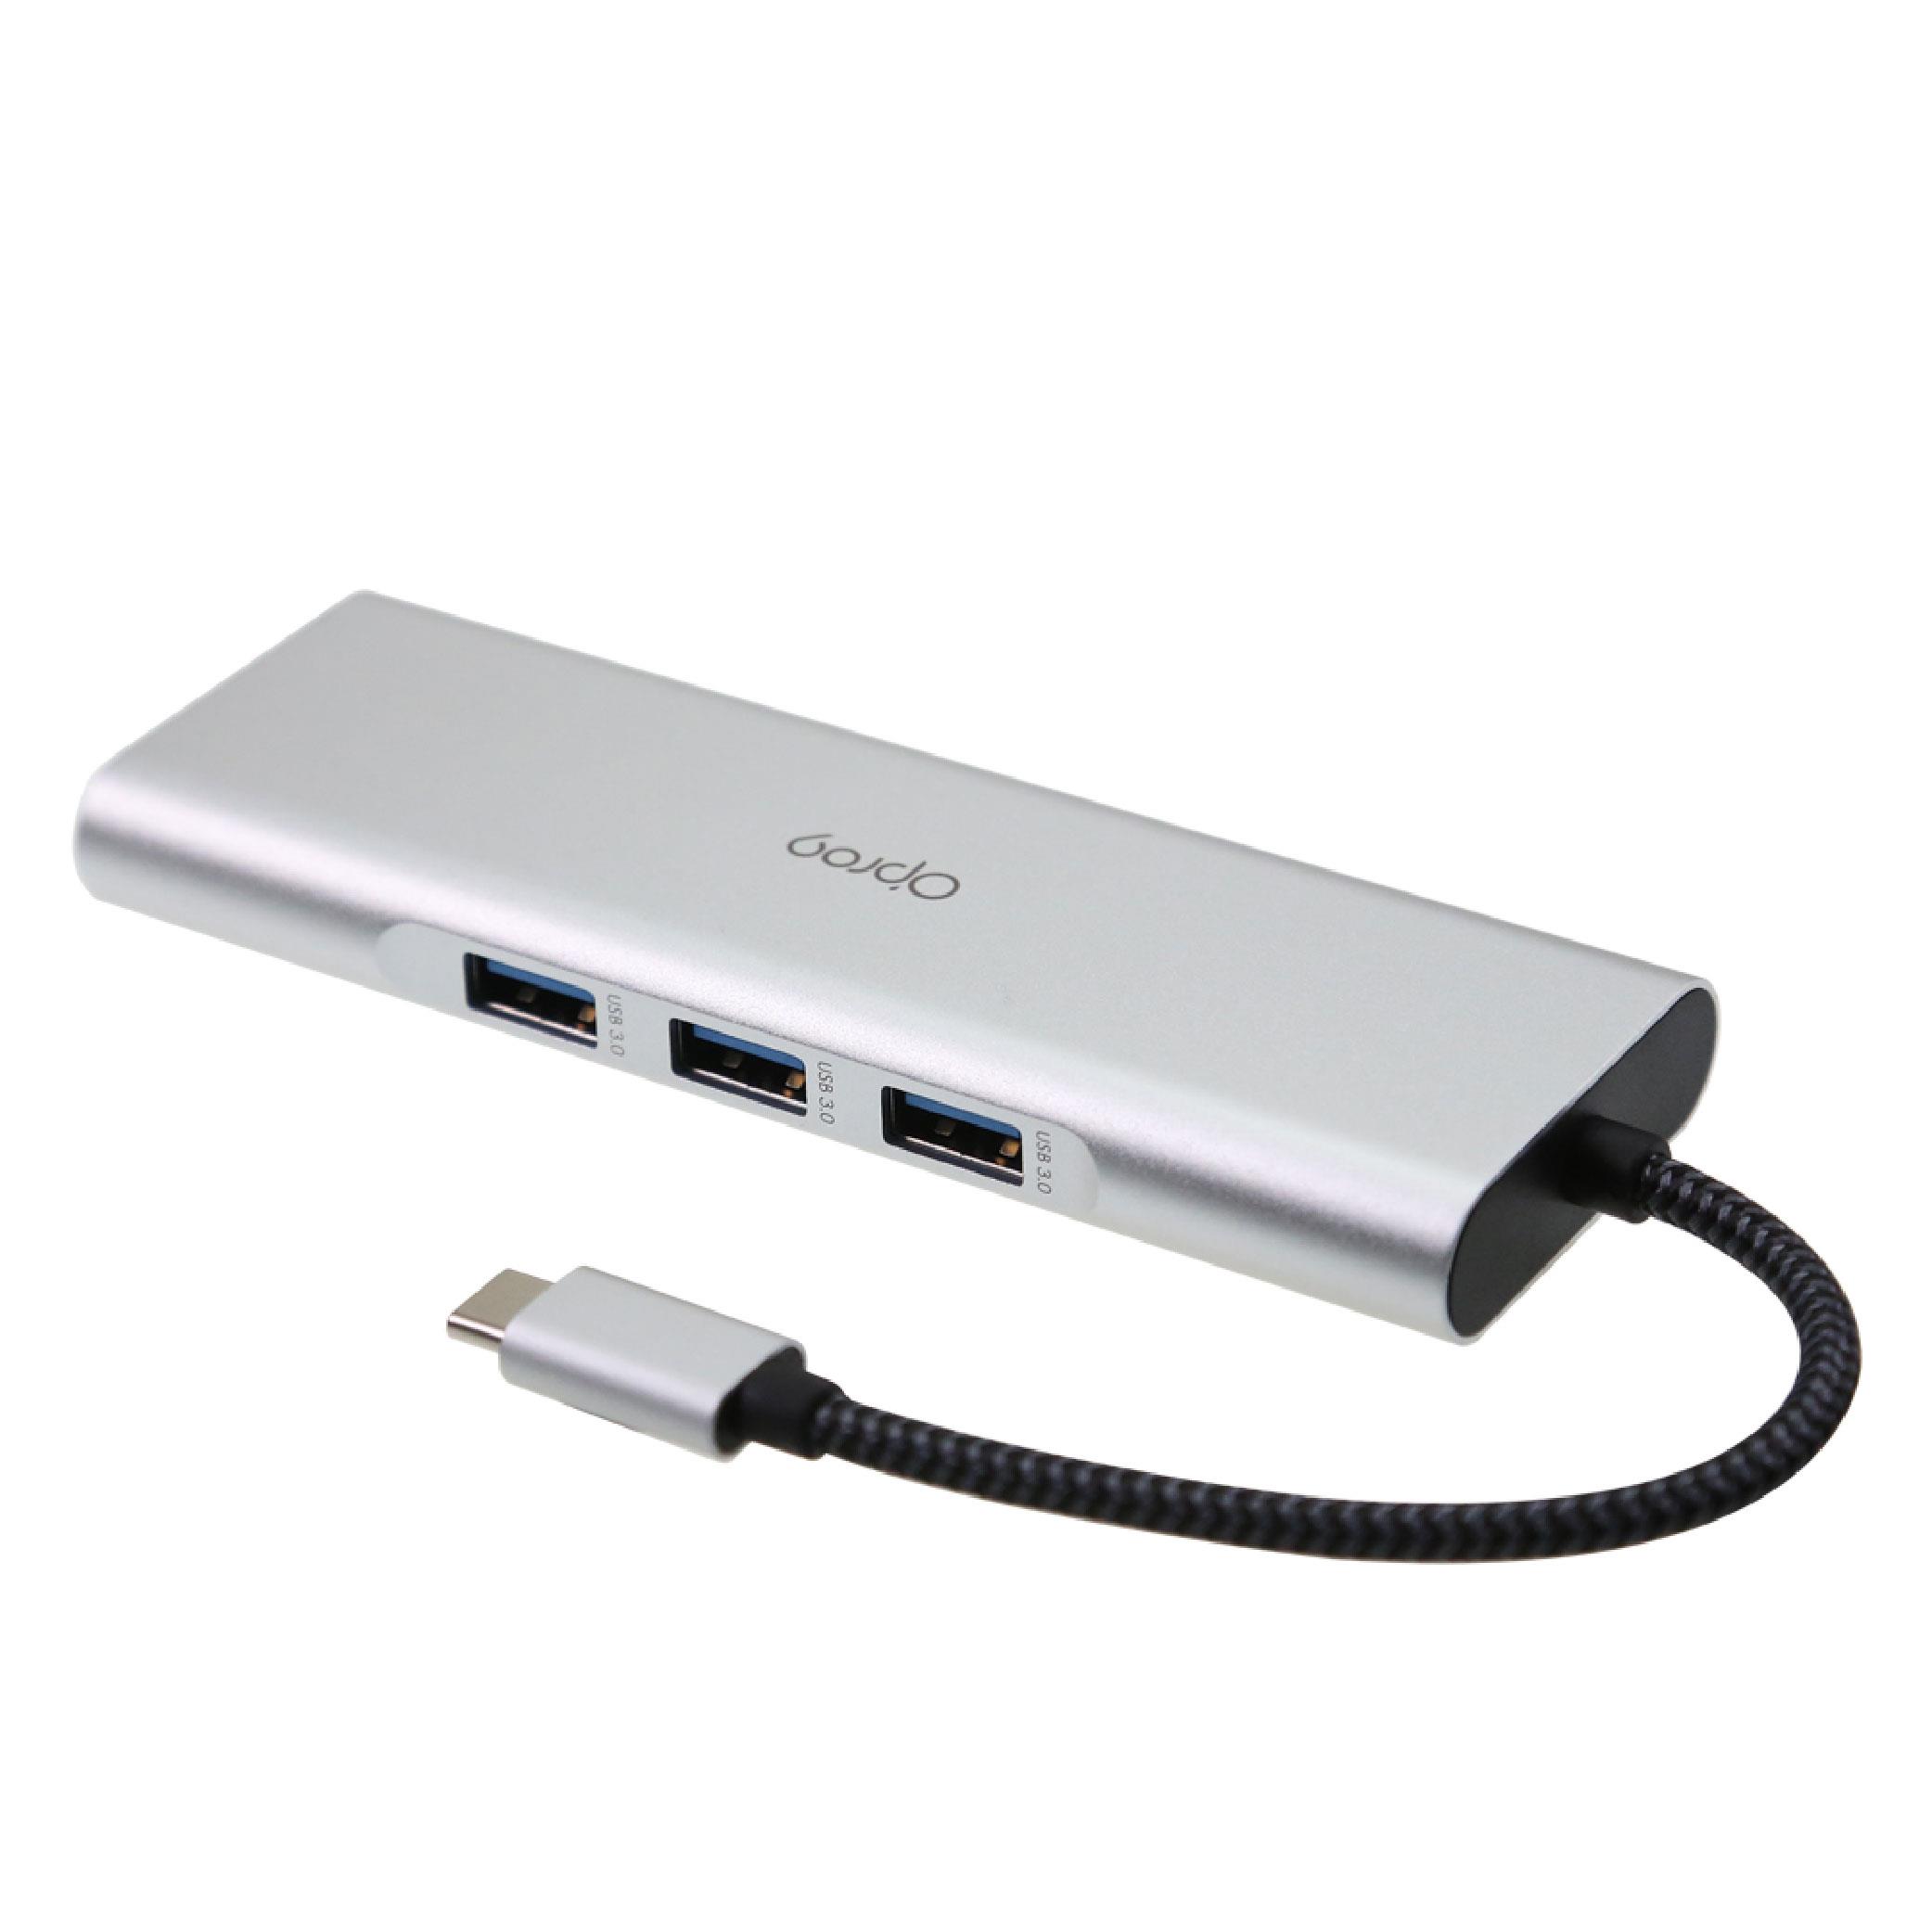 【支援4K】Opro9 USB-C 9合一多功能轉接器-HDMI PD快充